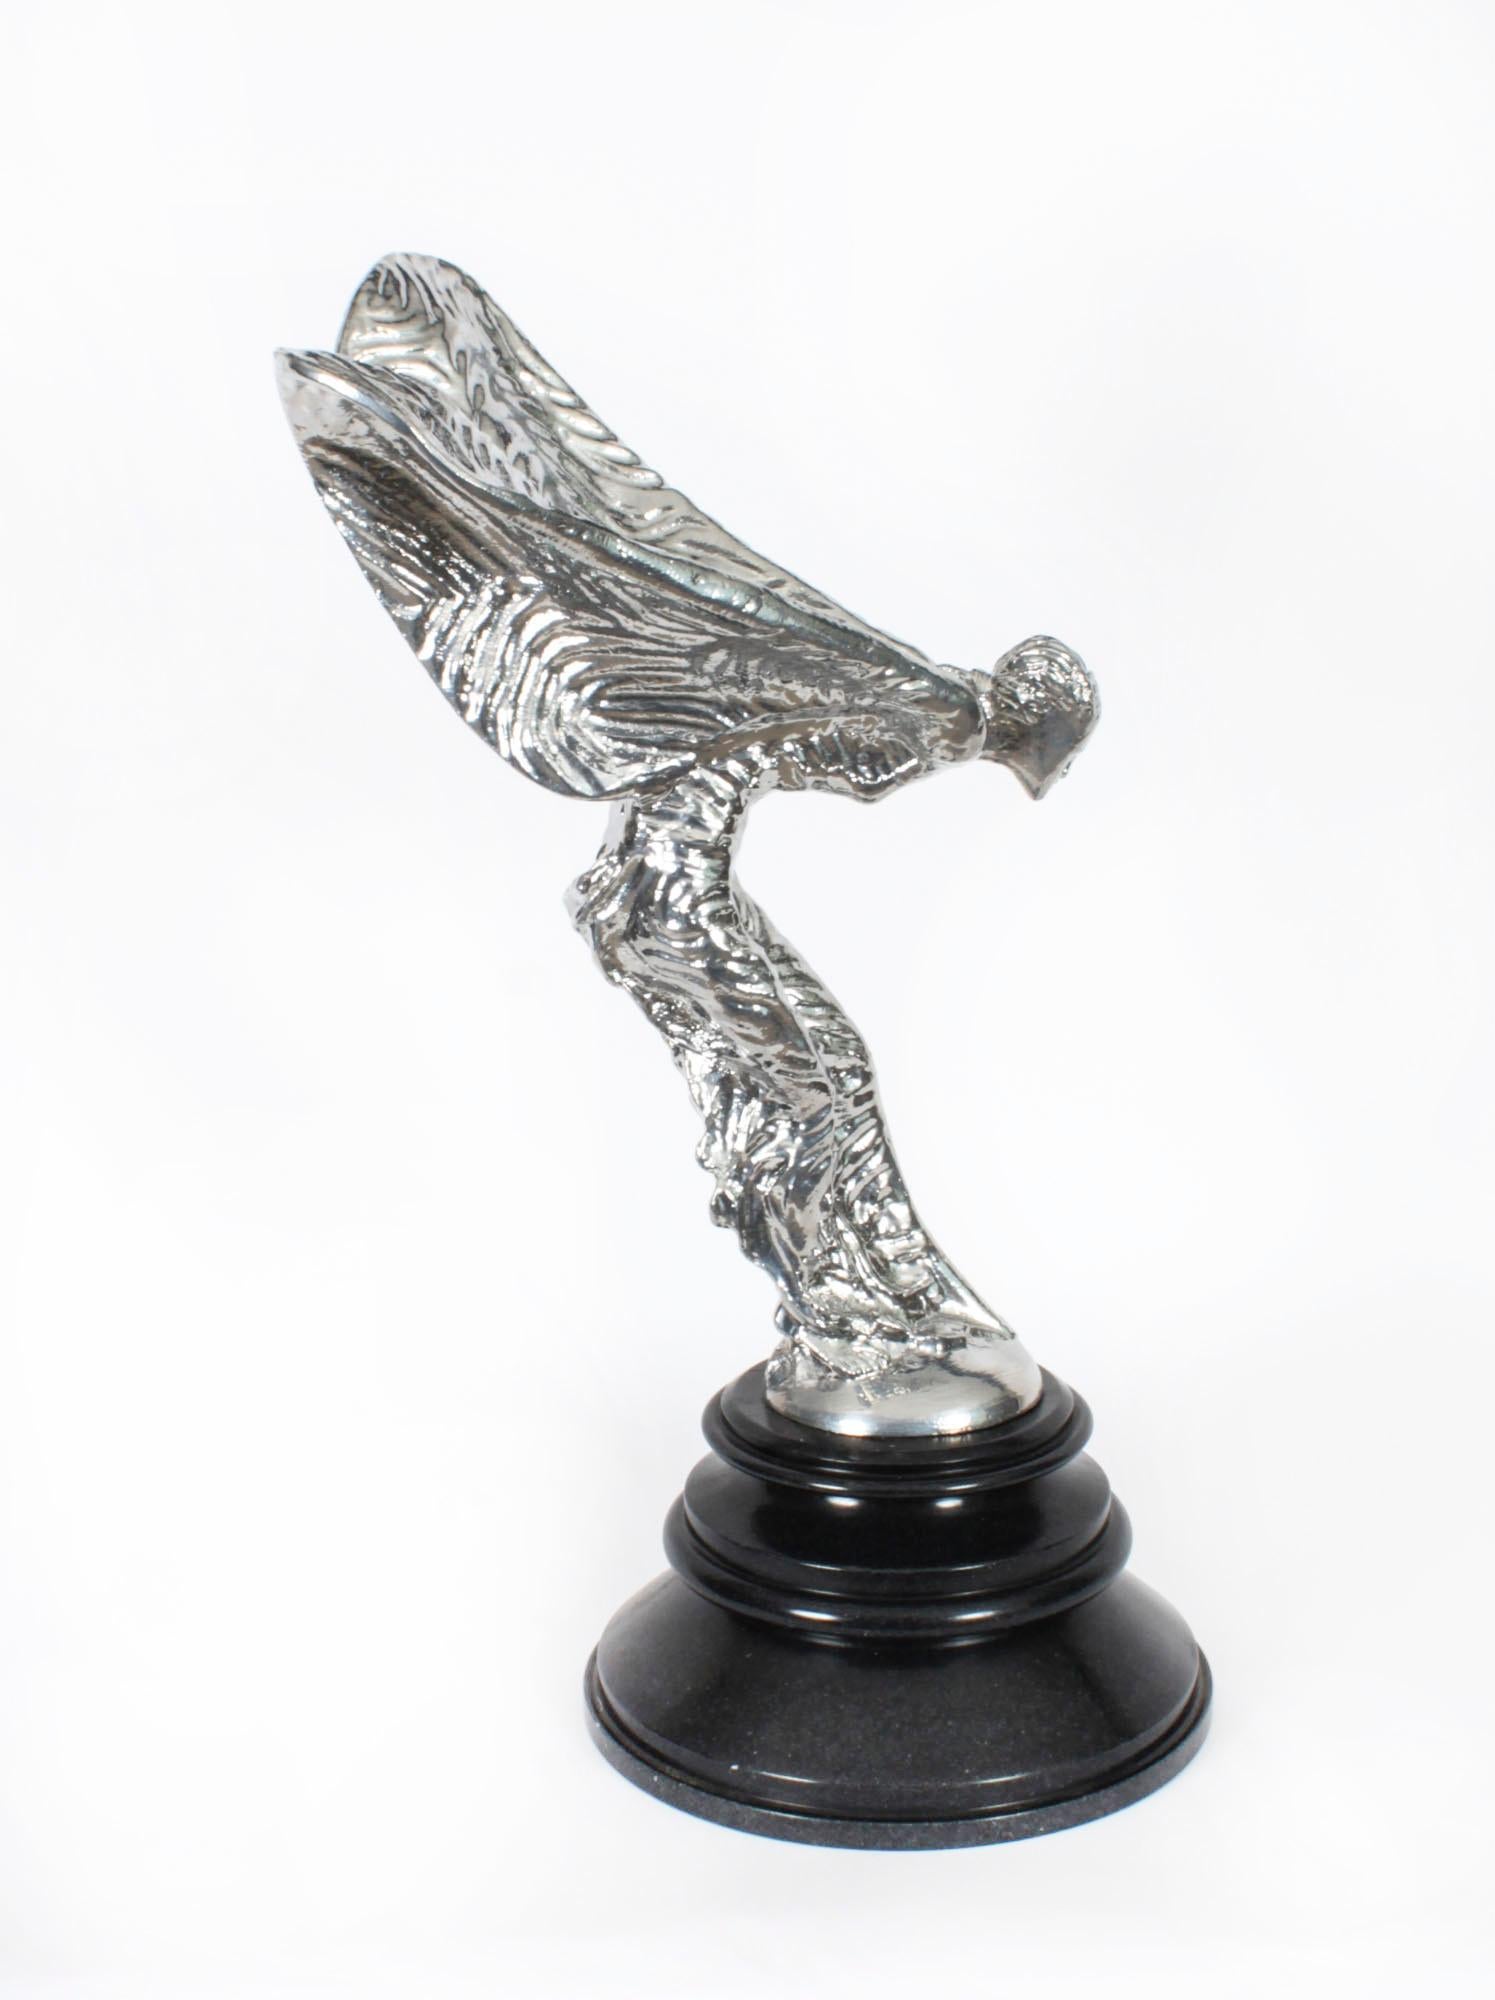 Eine große dekorative Rolls Royce-Skulptur aus versilberter Bronze, The Spirit of Ecstasy, aus der Mitte des 20. Jahrhunderts.

Die geflügelte Jungfrau wurde von Charles Robinson Sykes (1875-1950) entworfen und steht auf einem attraktiven runden